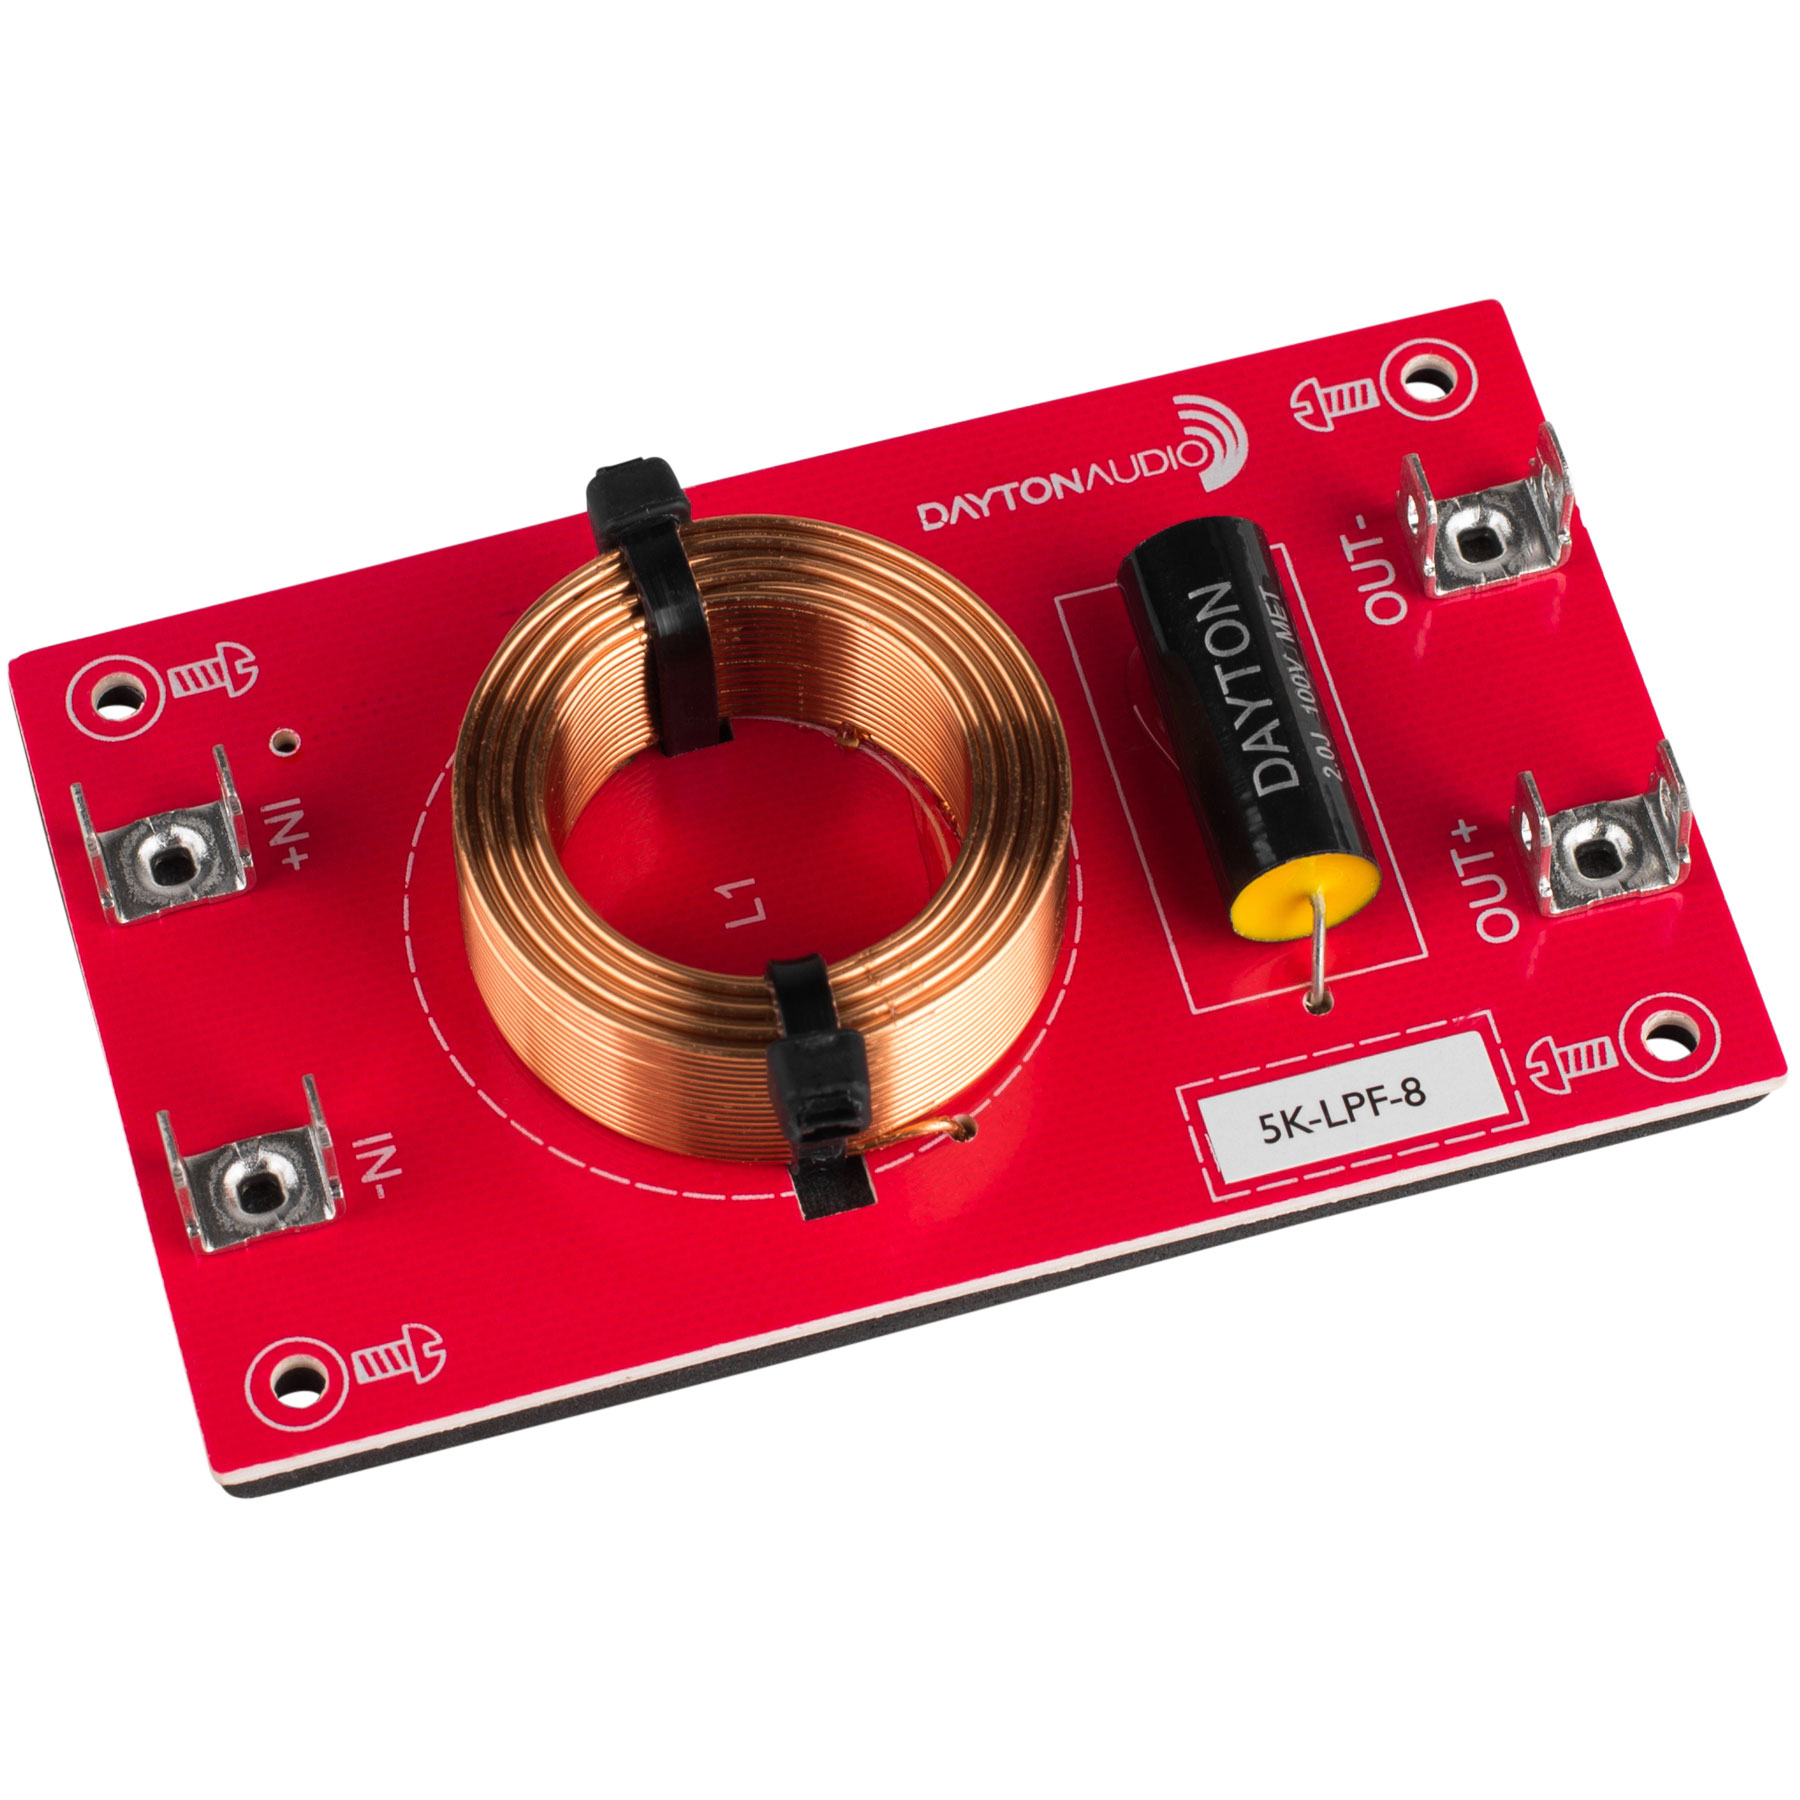 [DLF22]Dayton Audio 5k-LPF-8 ローパス フィルター（5,000 Hz：12 dB/Oct） Dayton Audioの高性能ローパス・フィルター！ 表示価格は「1個」のお値段です。Dayton Audioの高性能ローパス・フィルターは、日本でも人気の高いDayton Audio製のフィルムコンデンサーと、Dayton Audio製のネットワークコイルを使用した、高性能ネットワークボードです。Dayton Audio製の高性能ハイパス・フィルターと組み合わせると、あなたの希望に最適なネットワークが簡単に完成します。【仕様】■周波数：5,000Hz■インピーダンス：8Ω■コンデンサー：2μF■ネットワークコイル：0.51mH ※ 製品の仕様は予告なく変更になる場合があります。 5